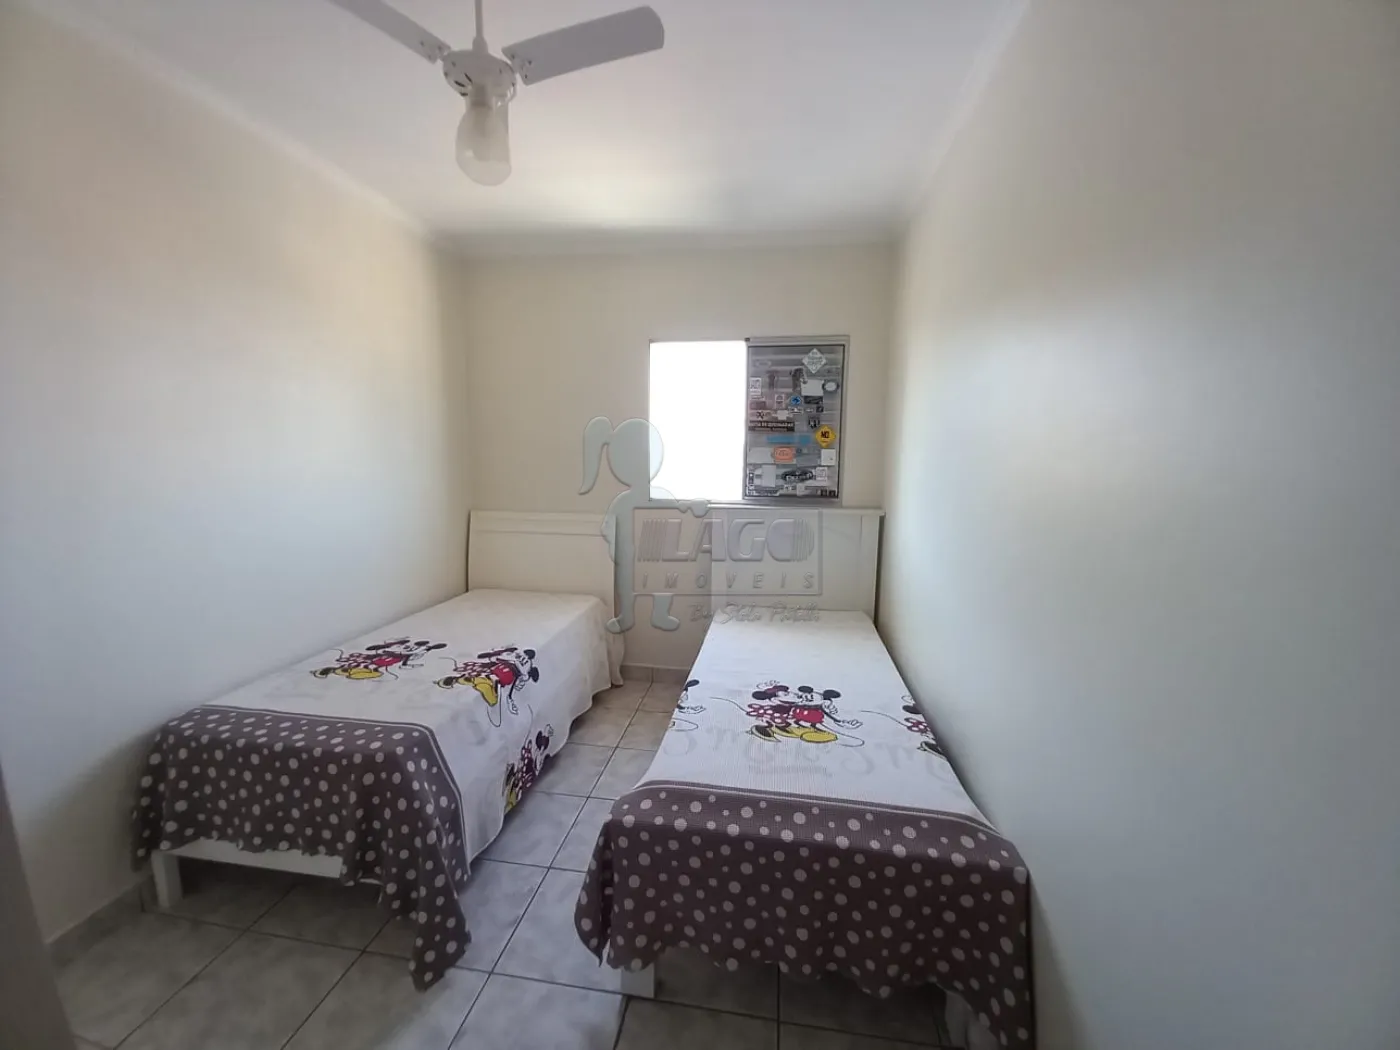 Comprar Apartamento / Padrão em Ribeirão Preto R$ 260.000,00 - Foto 11